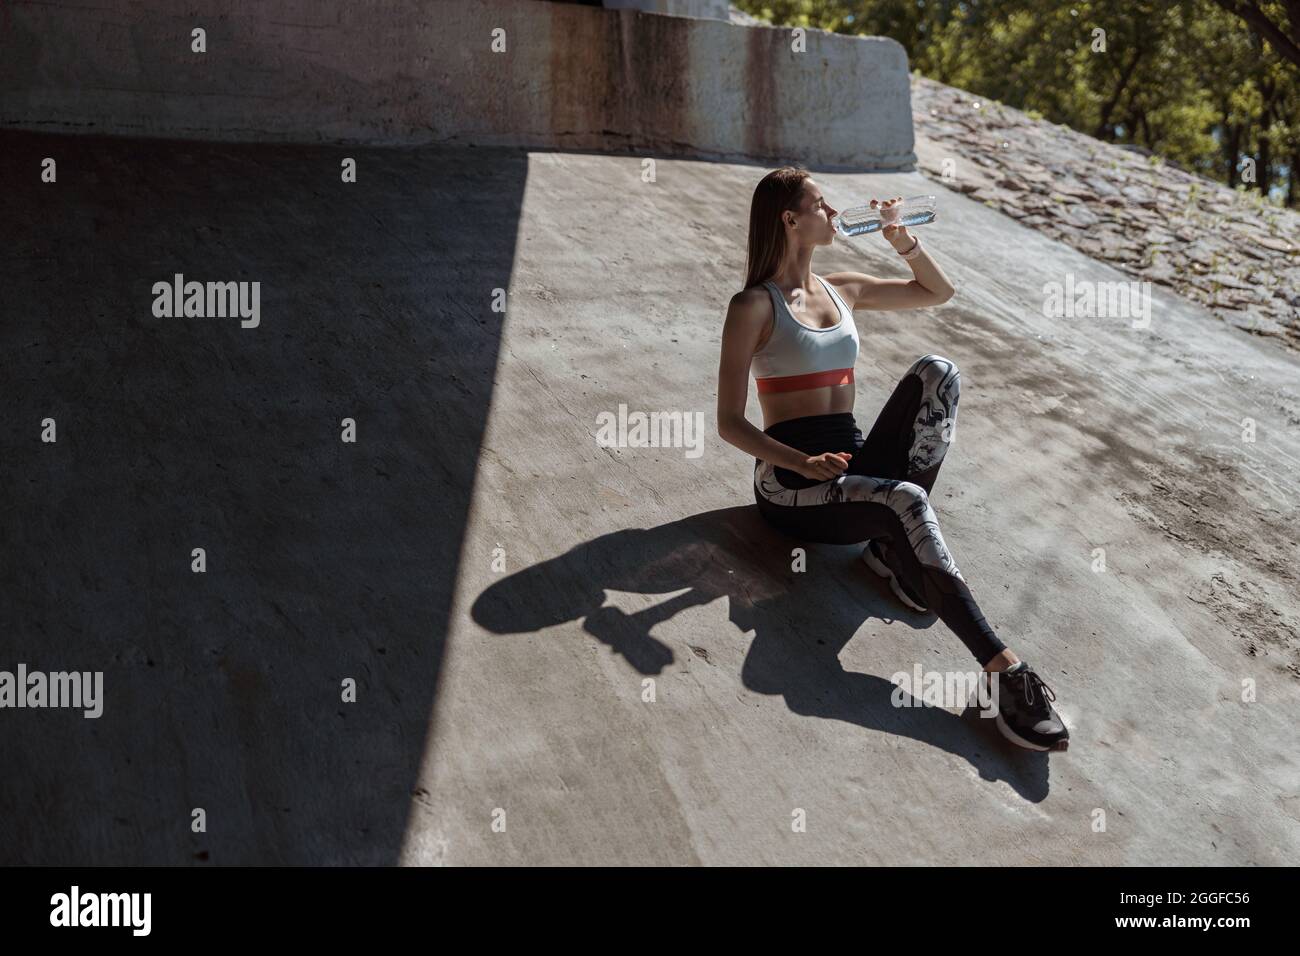 Attraktive Frau im Trainingsanzug trinkt Wasser auf Betonboden Stockfoto